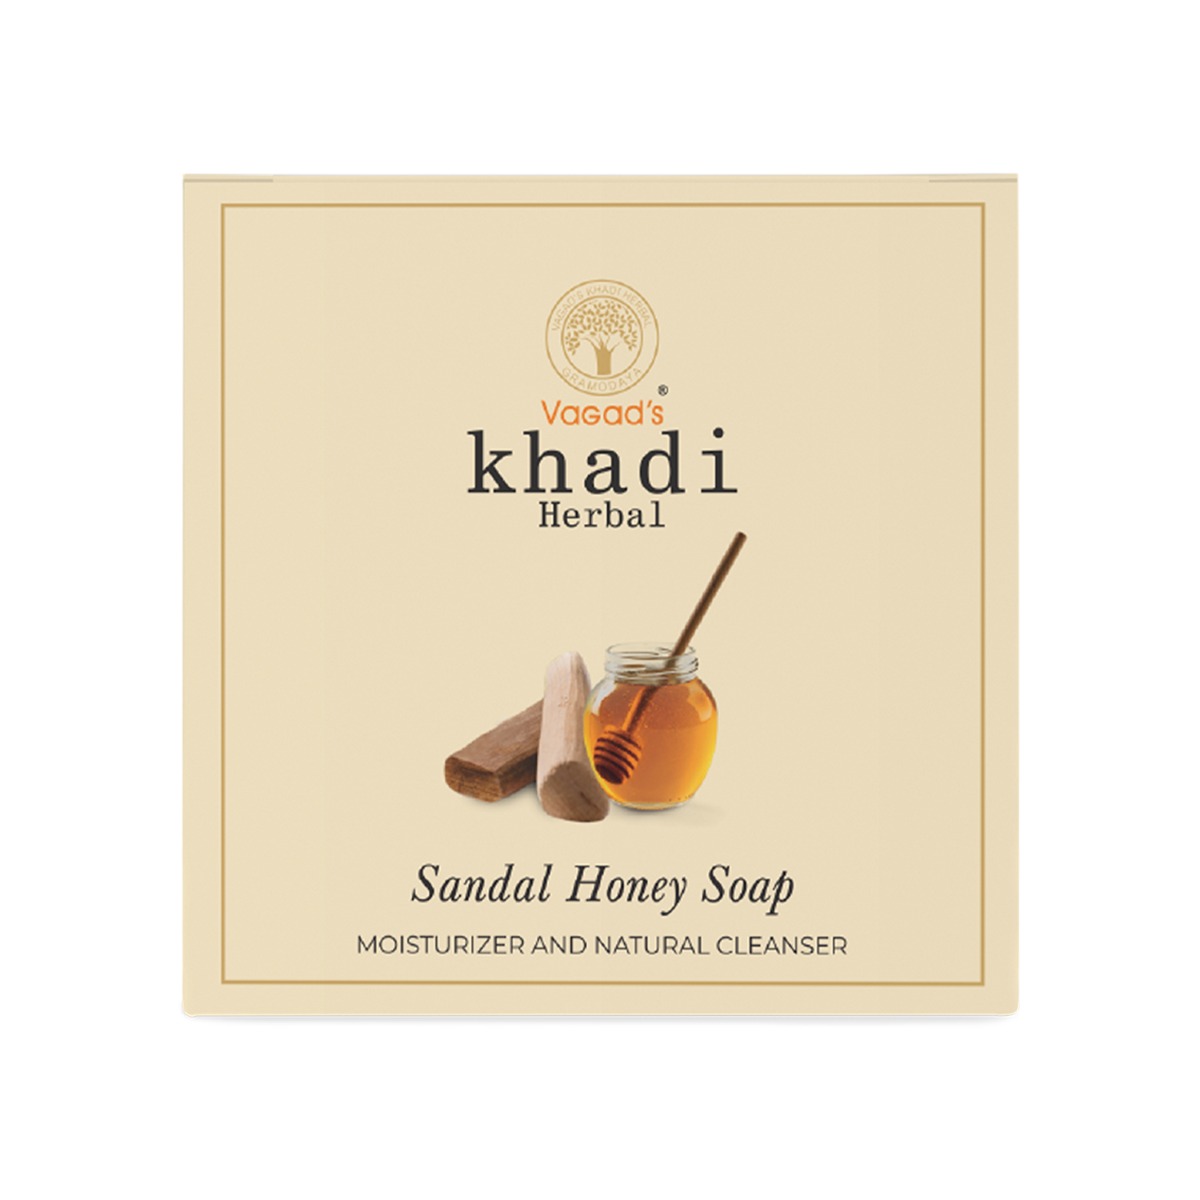 Vagad's Khadi Sandal & Honey Soap, 100gm